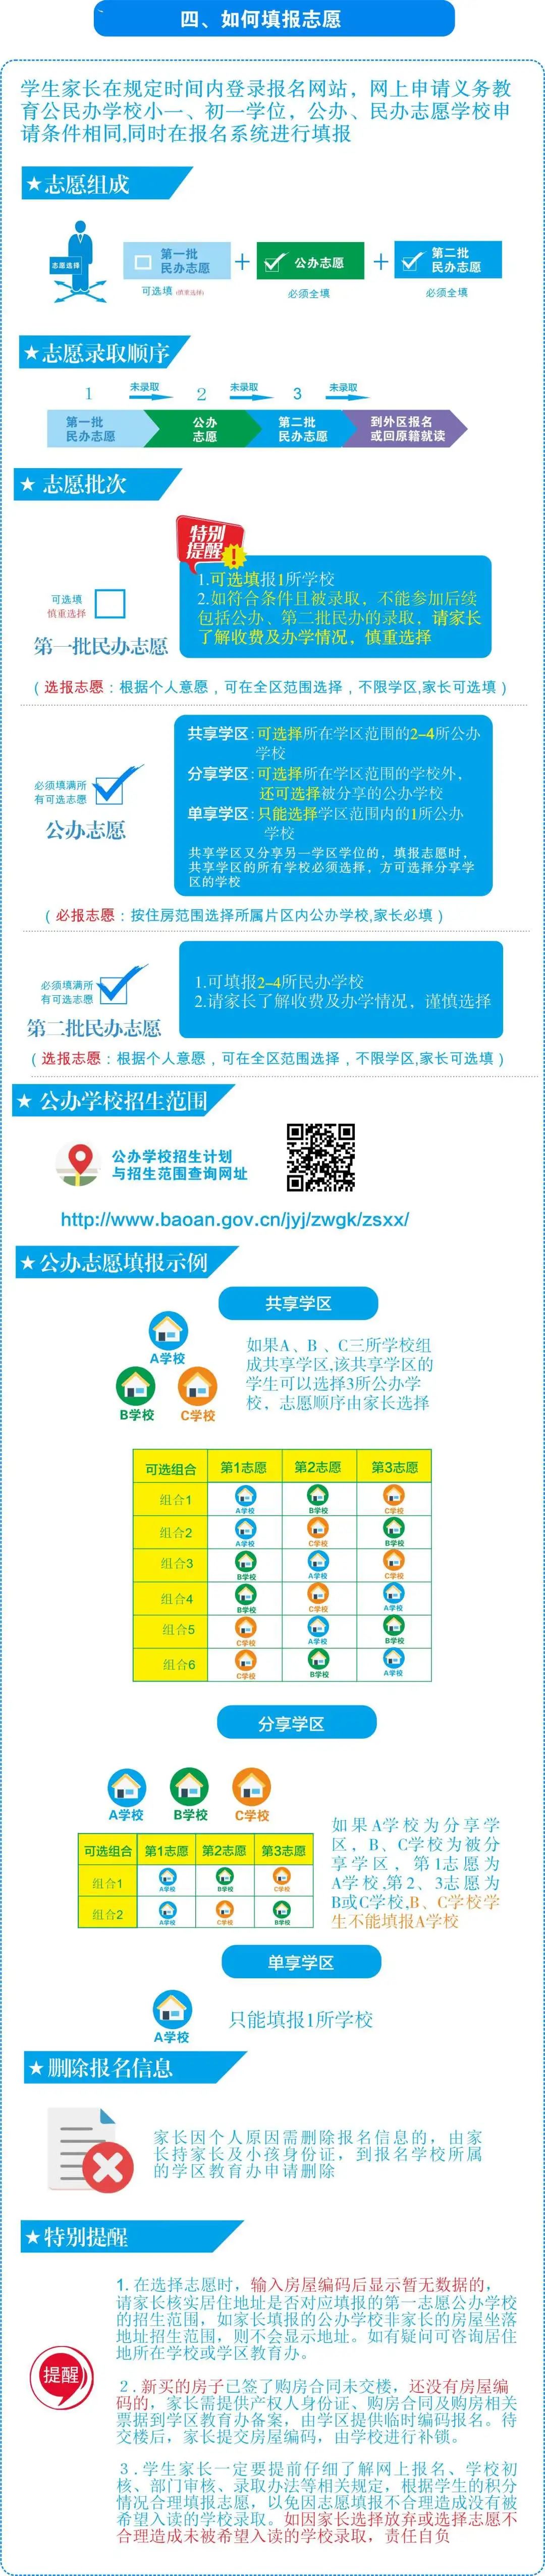 深圳宝安区2022年初一学位申请指南